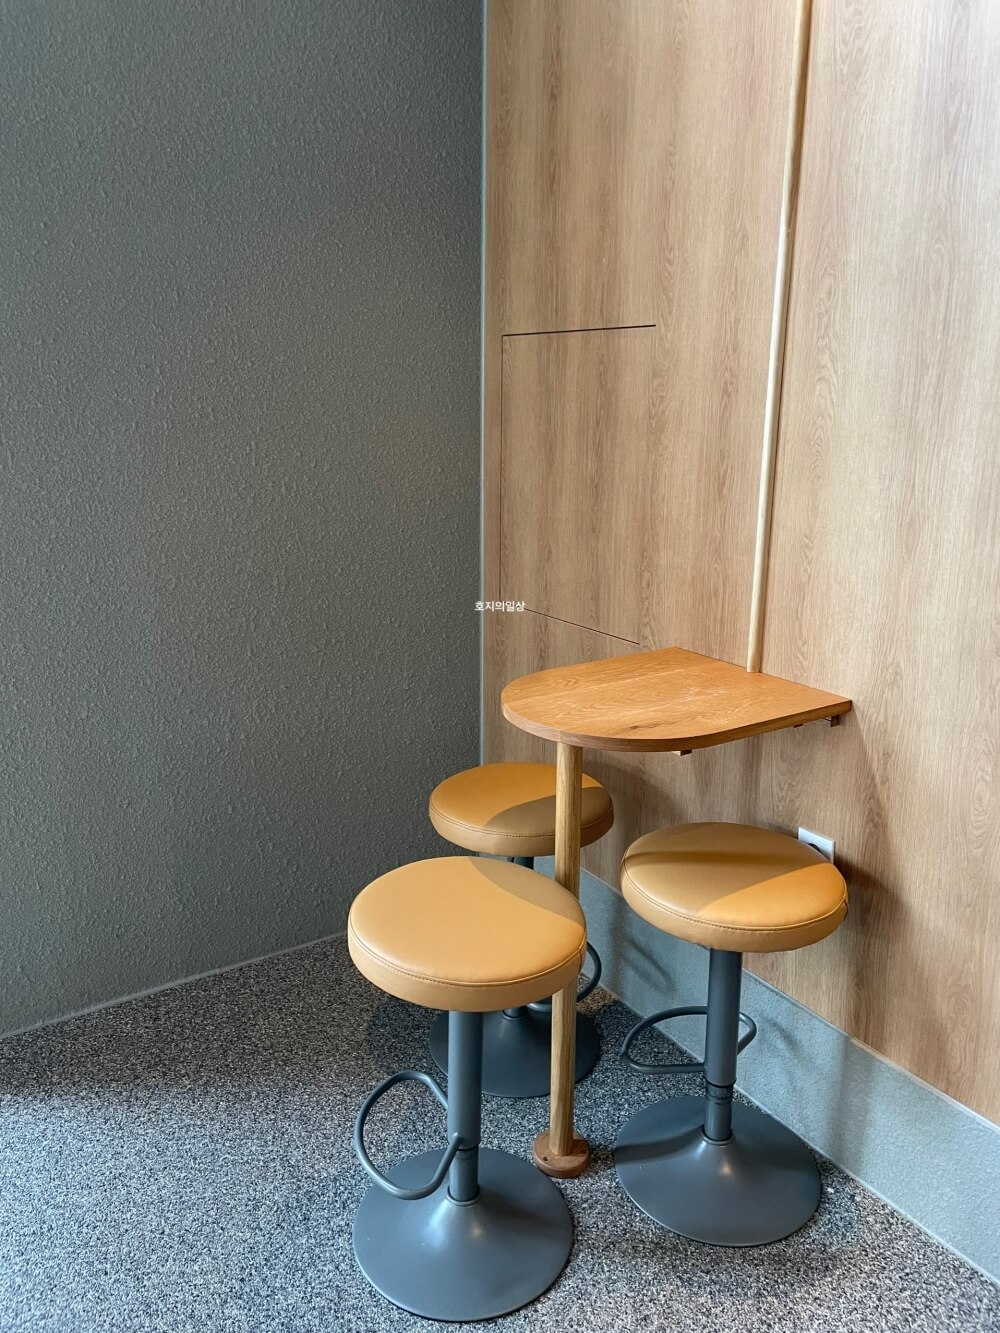 행궁동 카페 맛집 킵댓 로스터리 - 매장 1층 구석 좌석